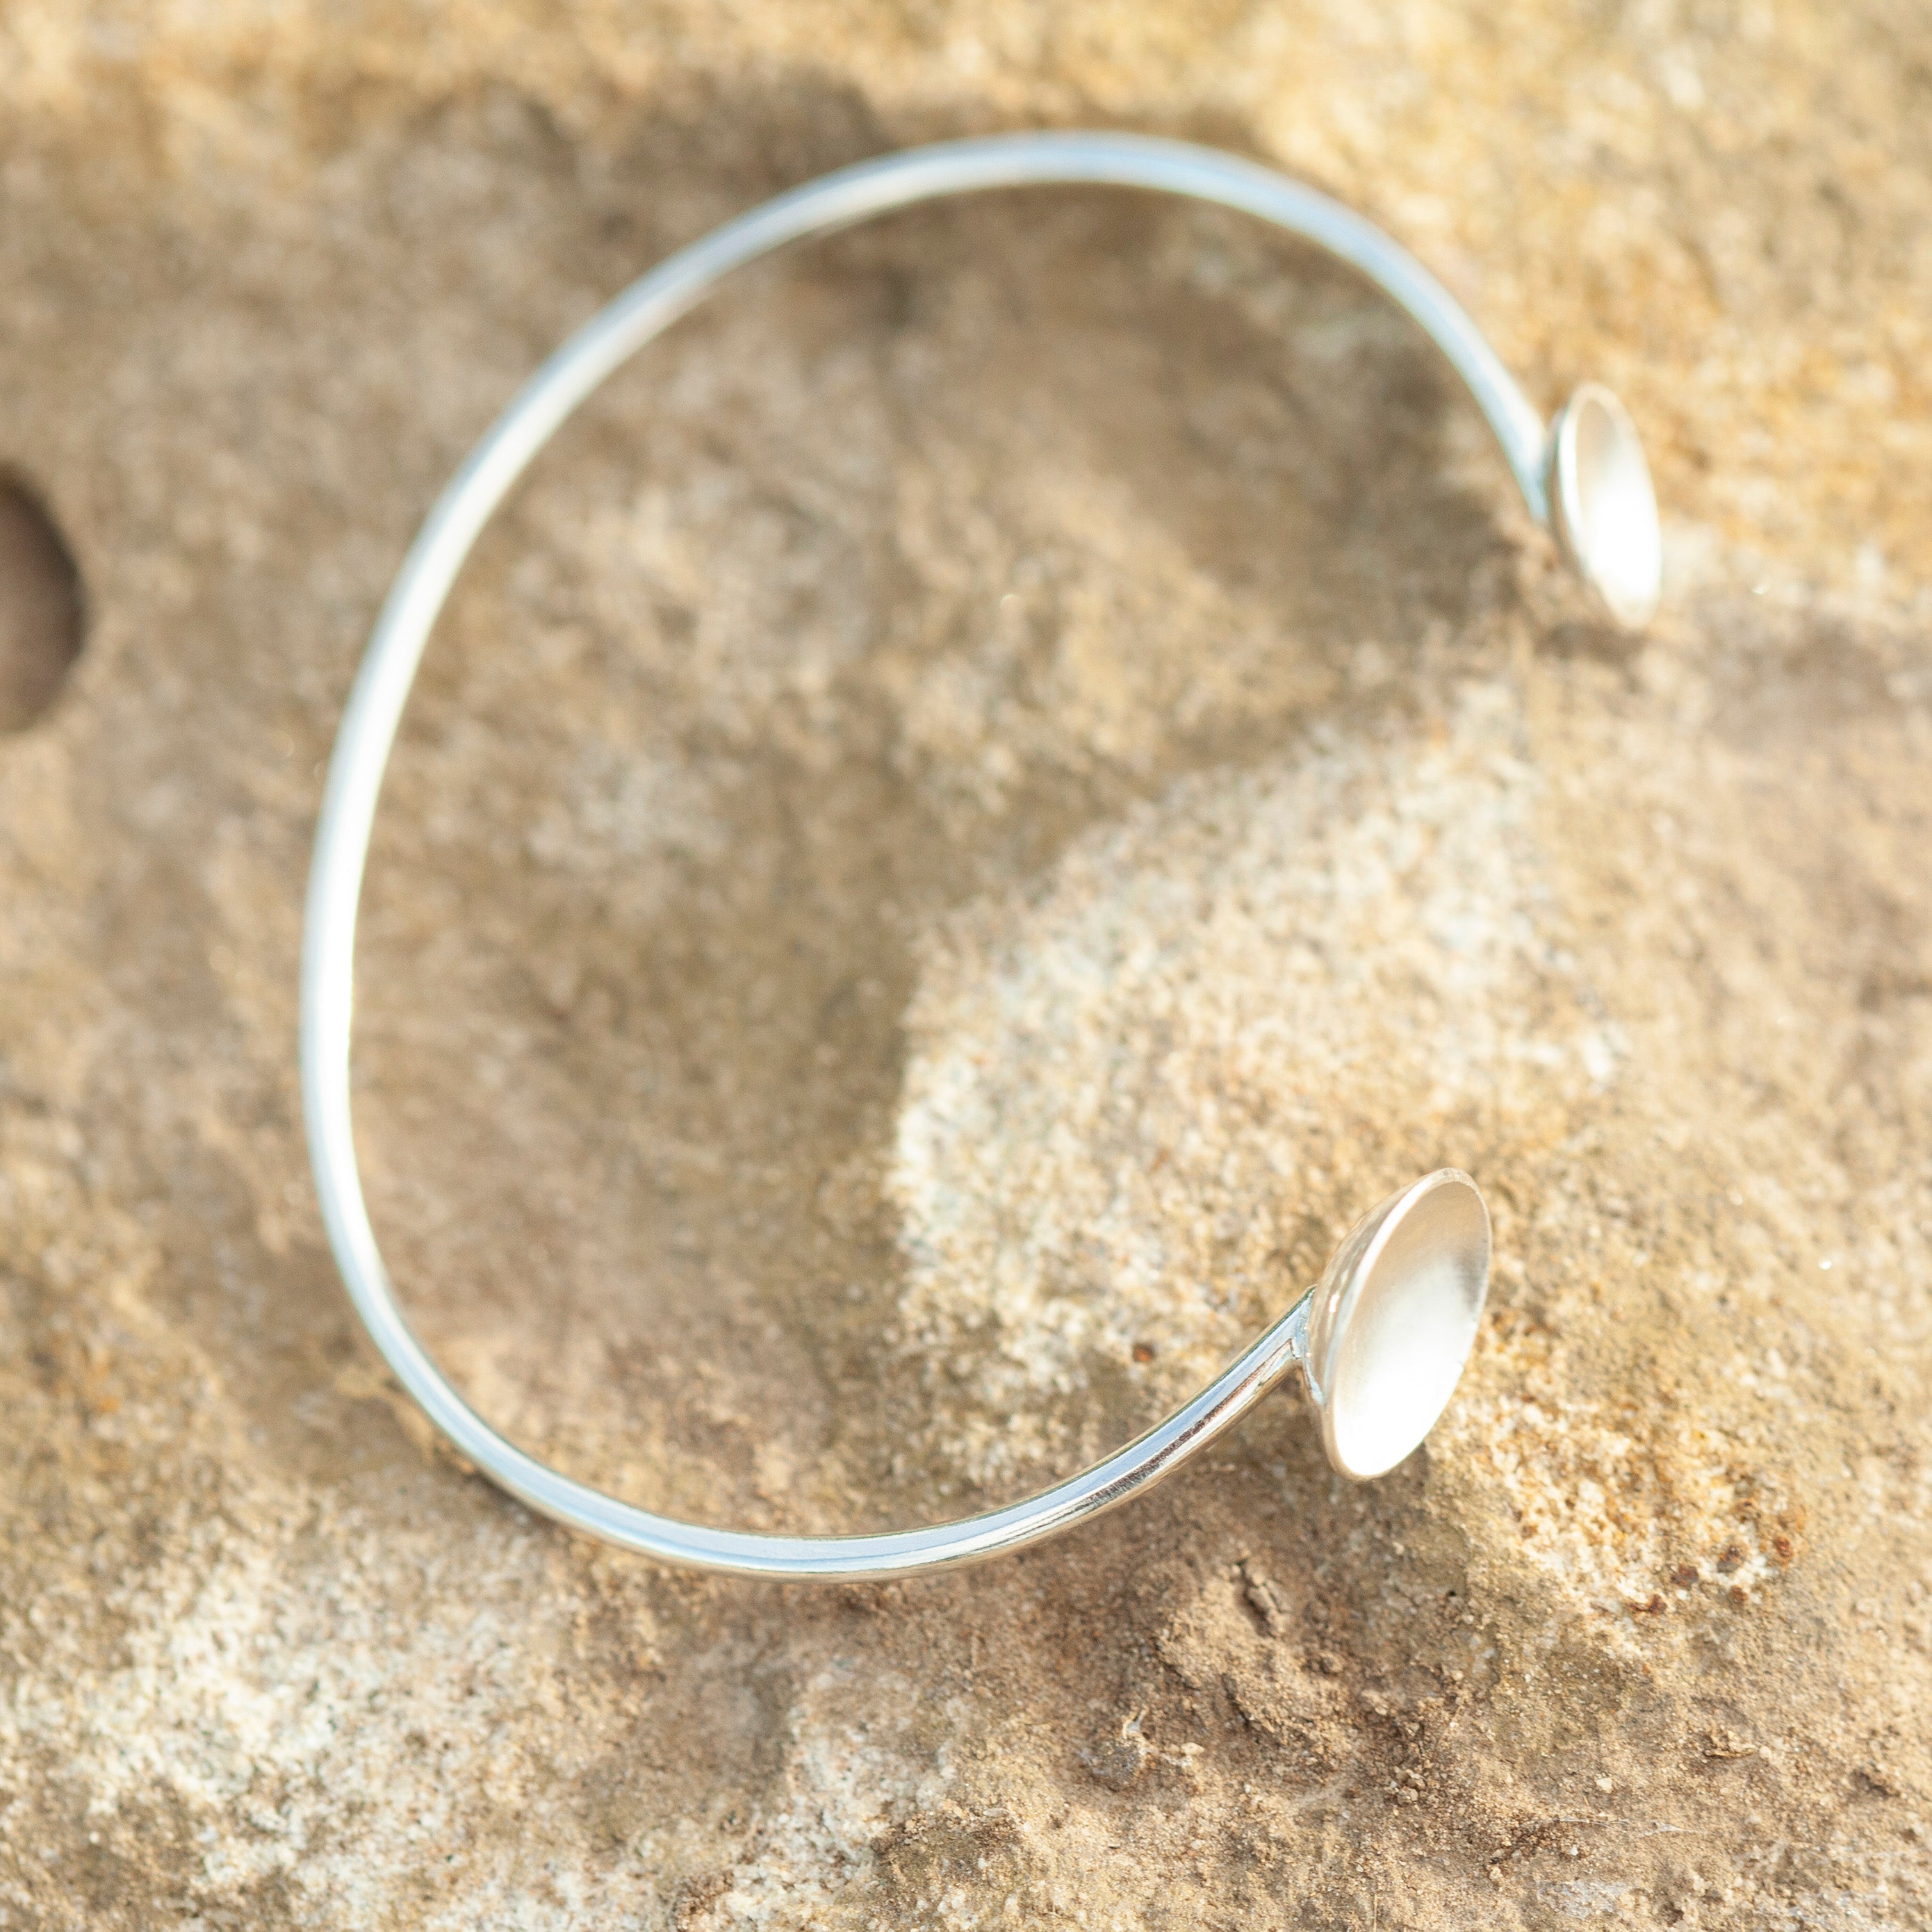 OOAK Edge elegance bracelet in silver #4 •  5,5cm (ready-to-ship)